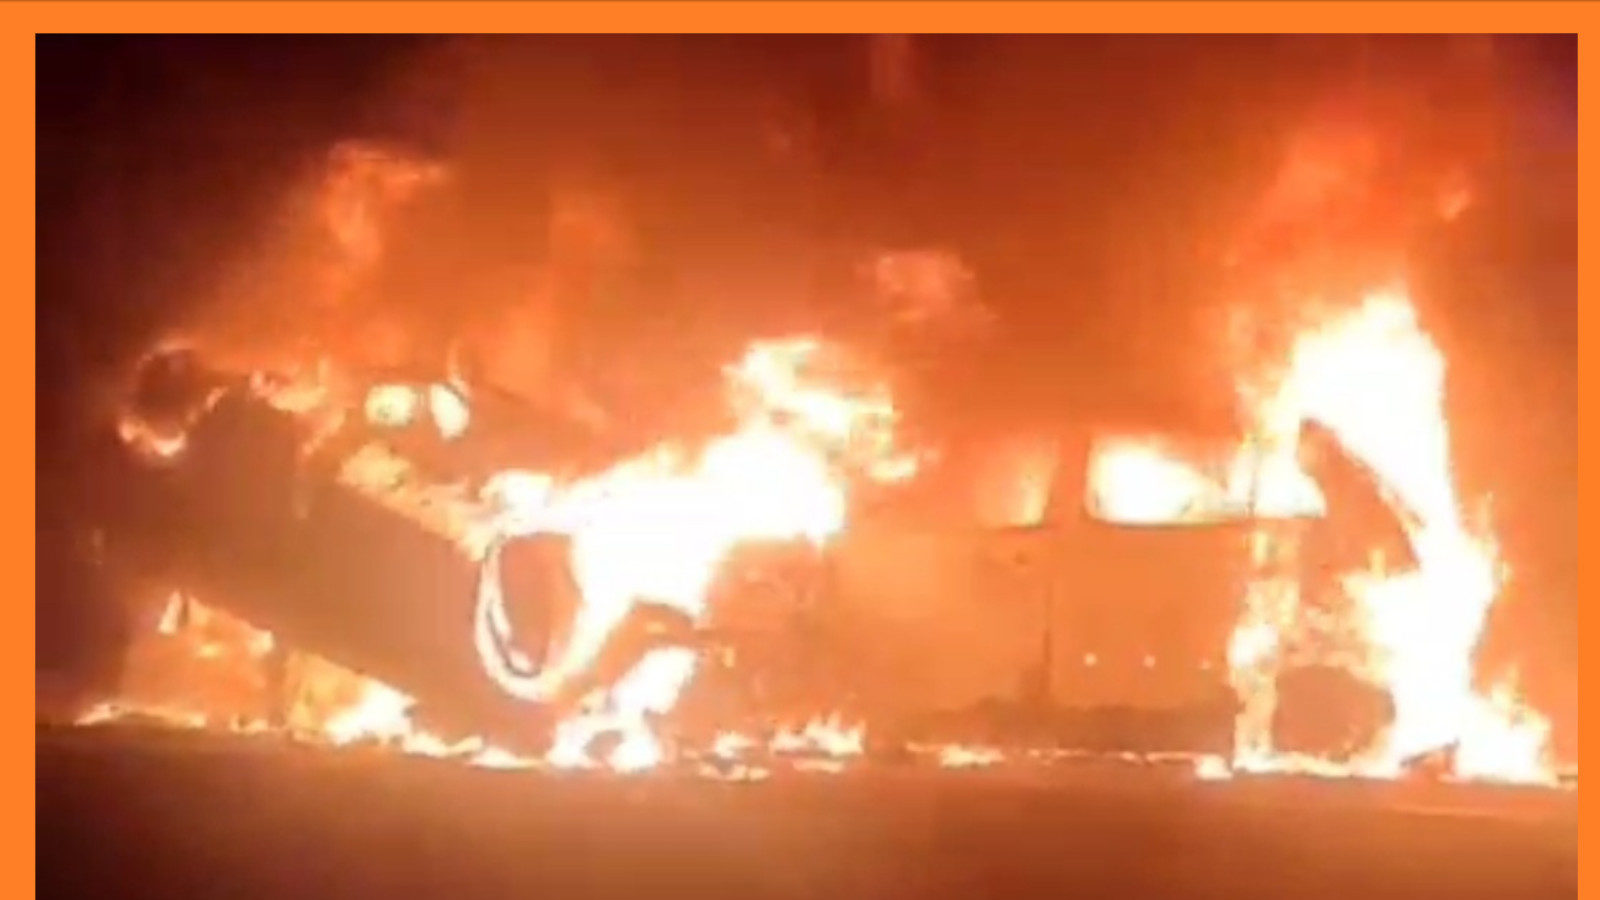 झालावाड़-इंदौर हाईवे पर दर्दनाक हादसा, 2 कारों में जबर्दस्त भिड़ंत के बाद लगी आग, 4 लोग जिंदा जले